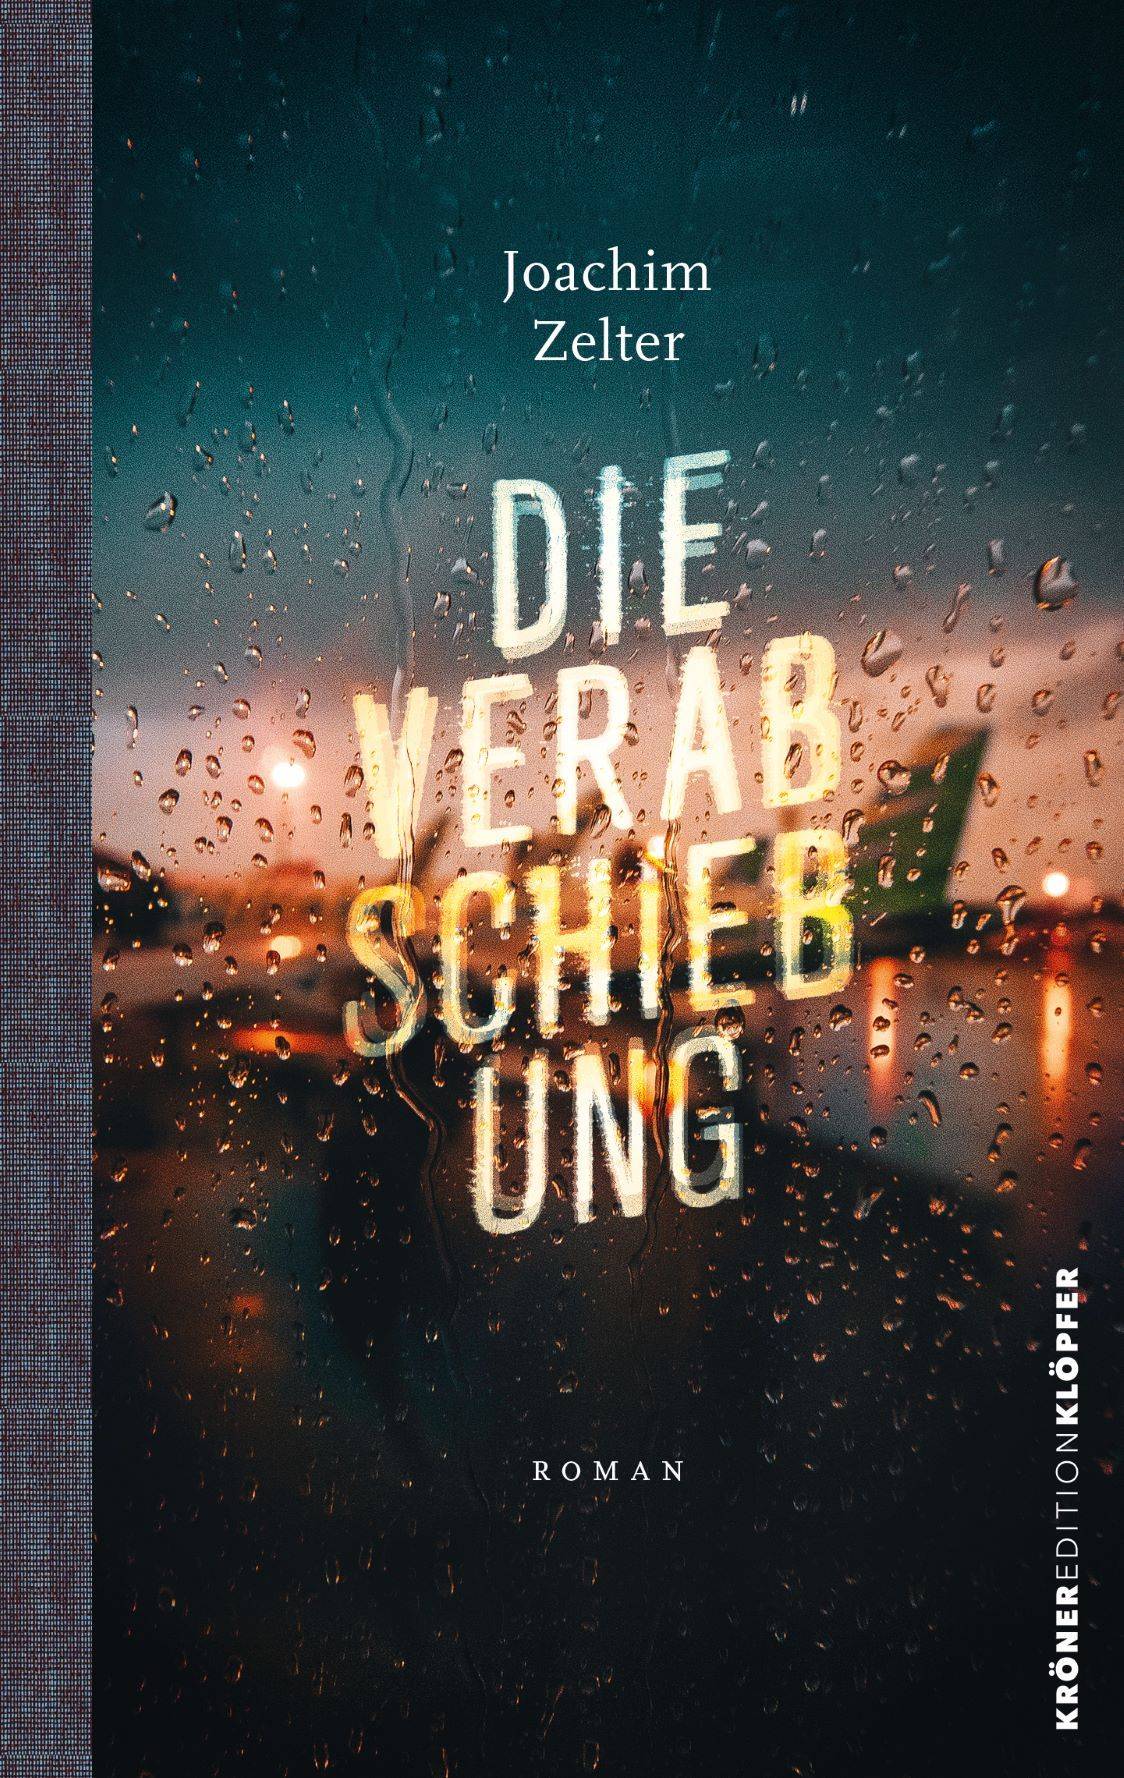 Cover des Buches "Die Verabschiebung" von Joachim Zelter (c) (c) Kröner Verlag, Edition Klöpfer